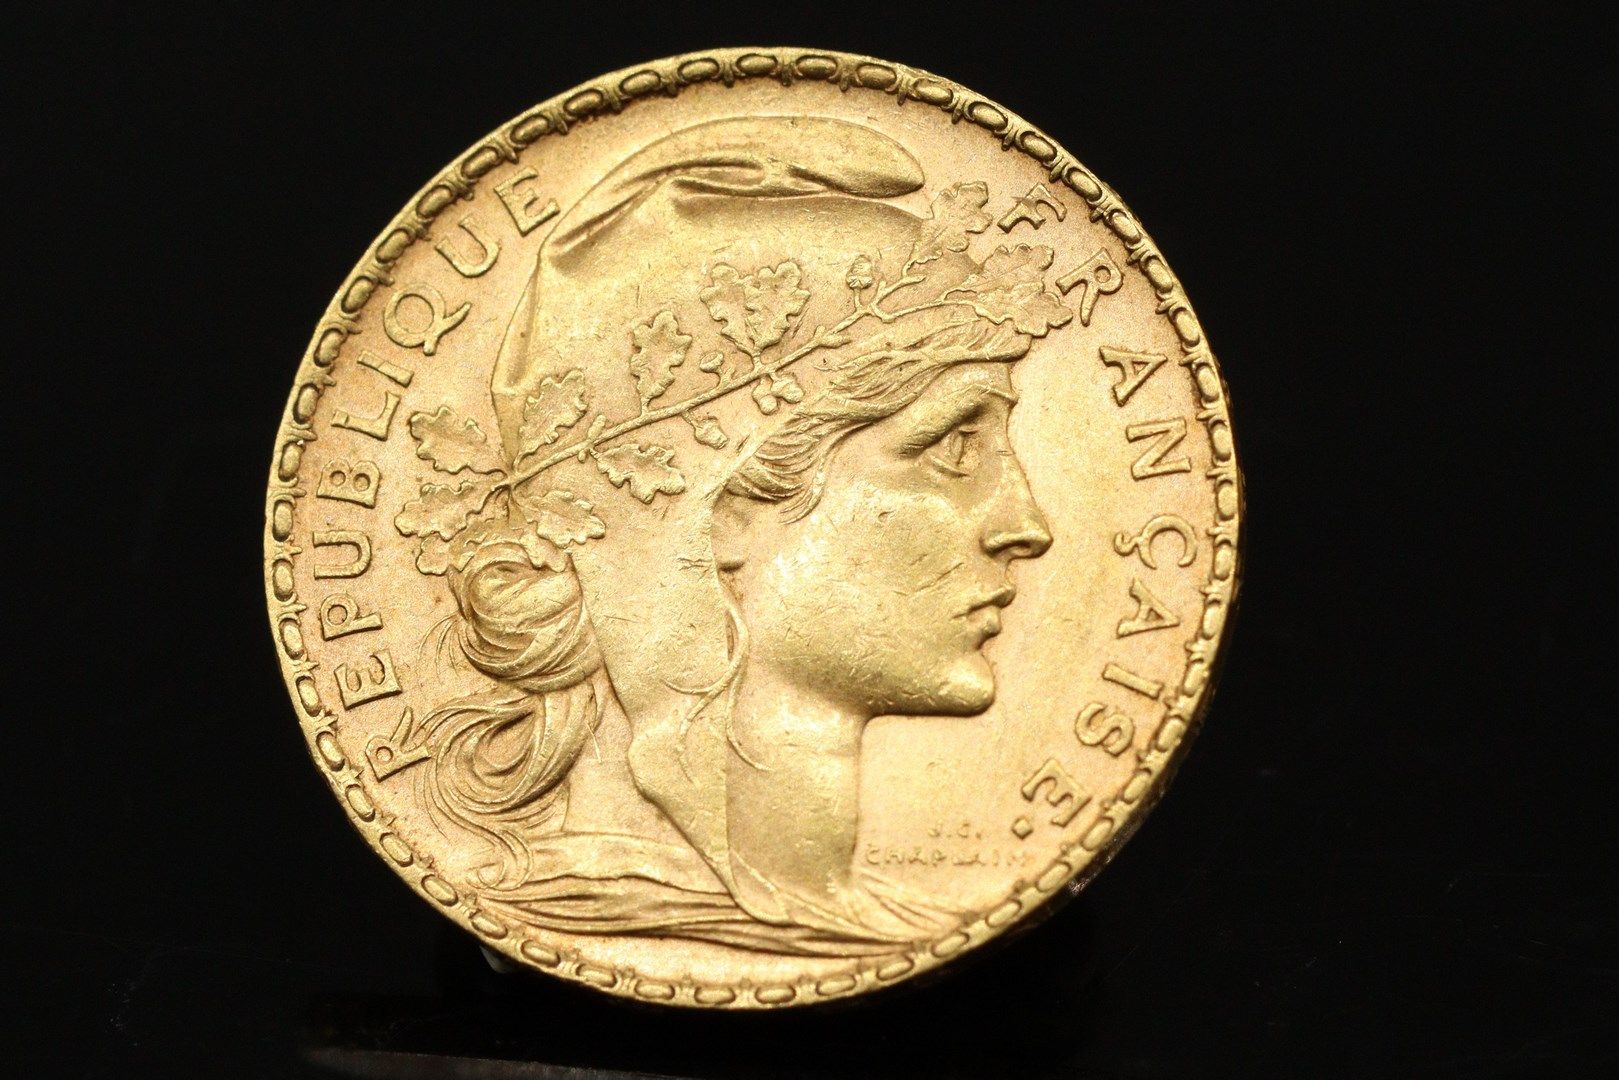 Null 20法郎的公鸡金币（1902年）

重量：6.46克。